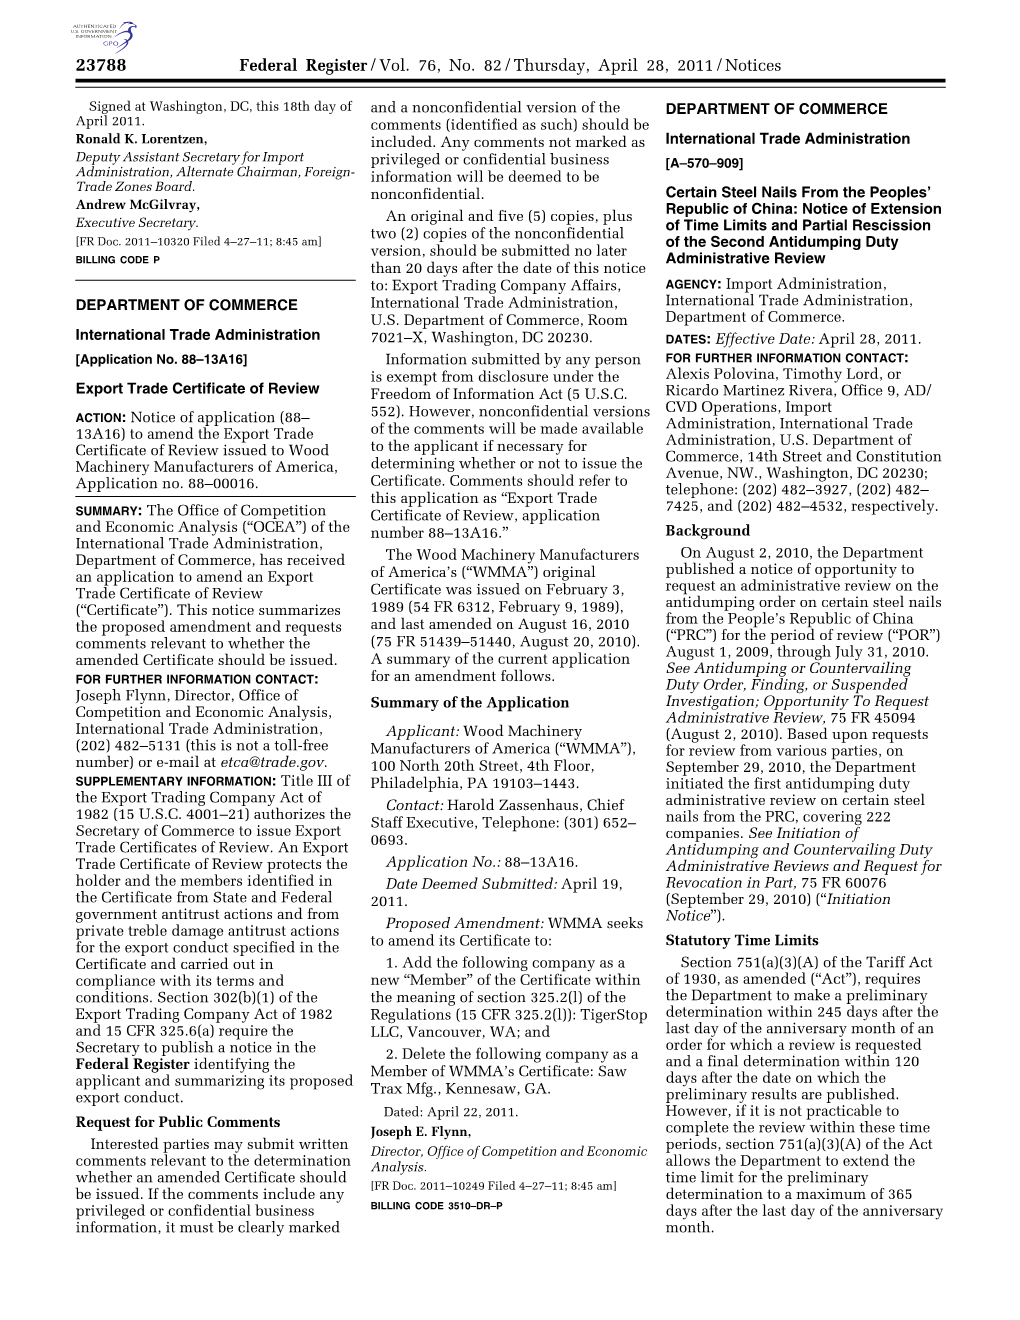 Federal Register/Vol. 76, No. 82/Thursday, April 28, 2011/Notices